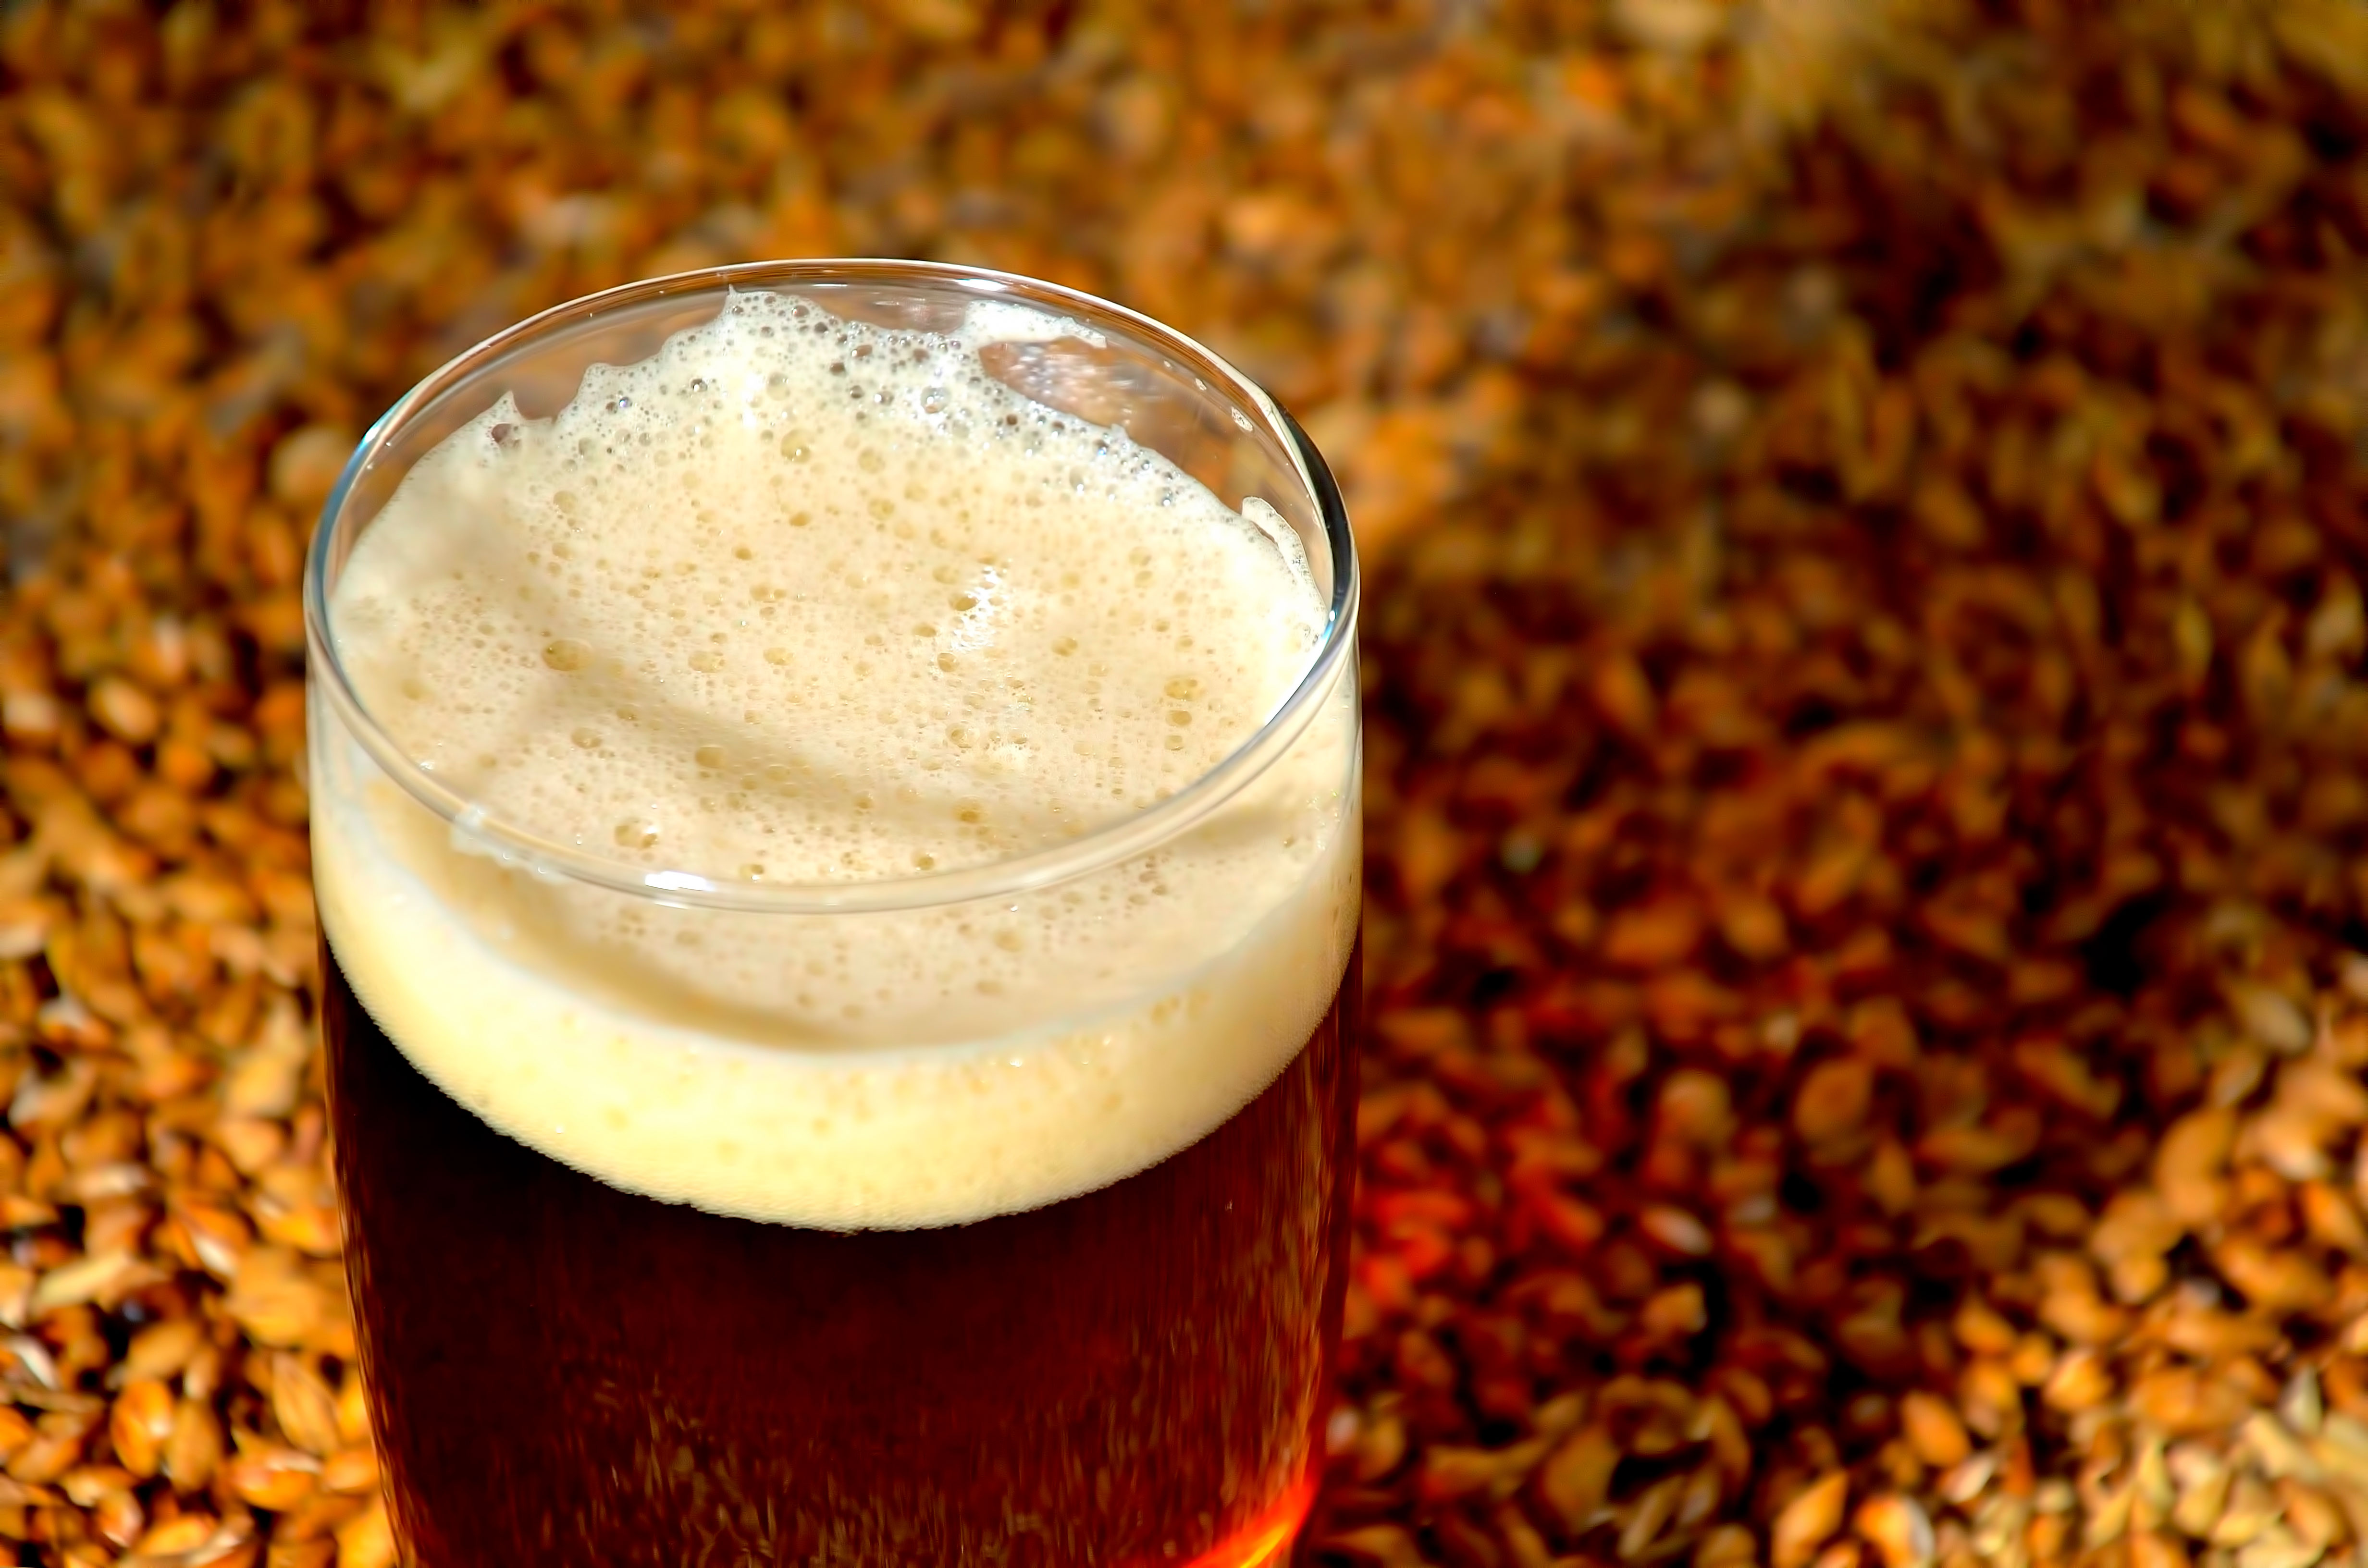 cerveza cero, cerveza sin, cerveza 00, cervezas 00, cervezas cero, cervezas sin alcohol, como se hace la cerveza sin alcohol, como se hace la cerveza 0,0, que es la cerveza 0,0, como se fabrica la cerveza 0,0, como se fabrica la cerveza sin,